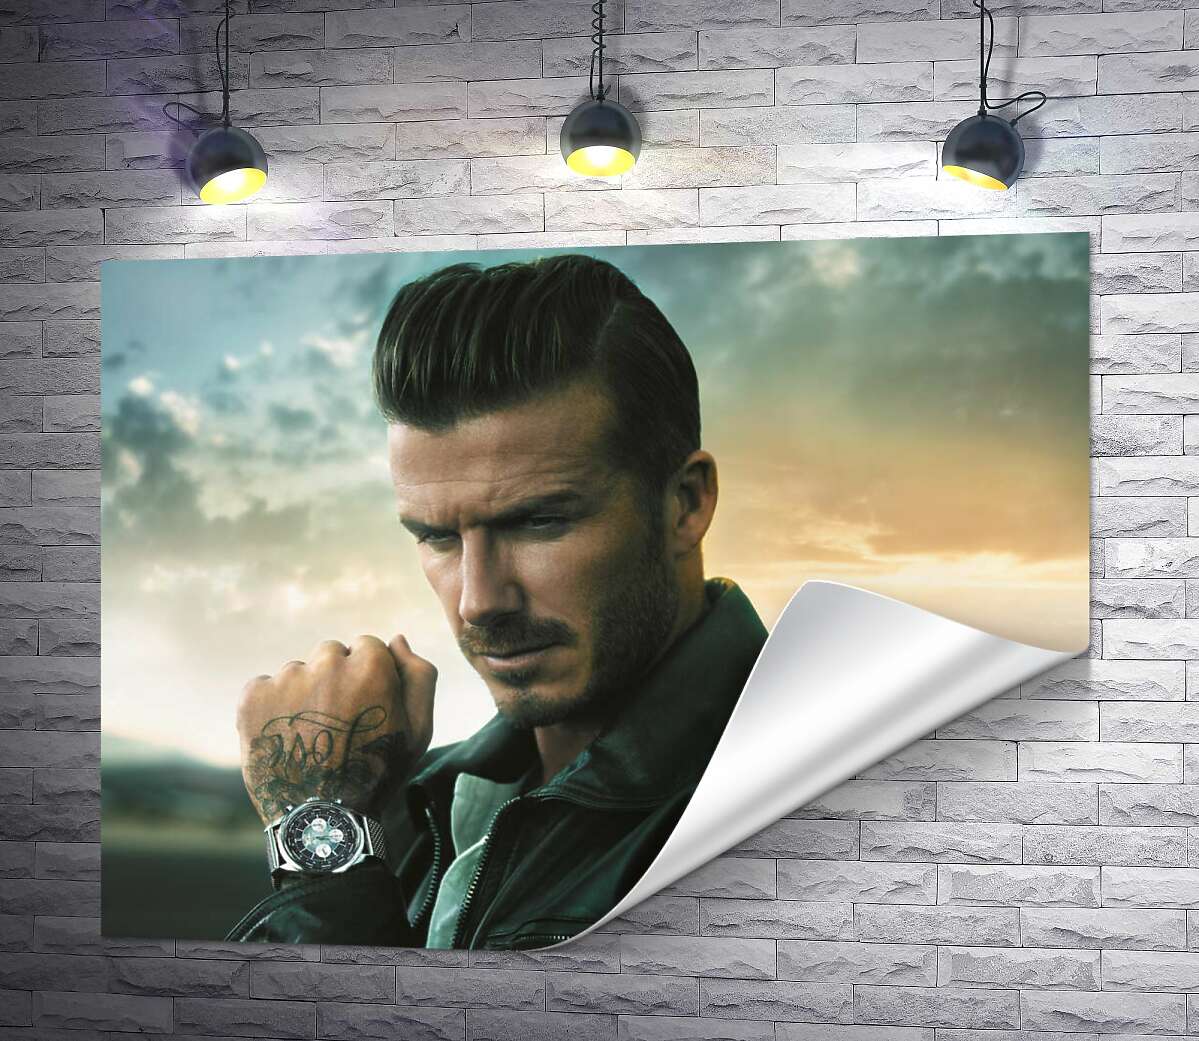 друк Девід Бекхем (David Beckham) рекламує годинник від компанії Breitling